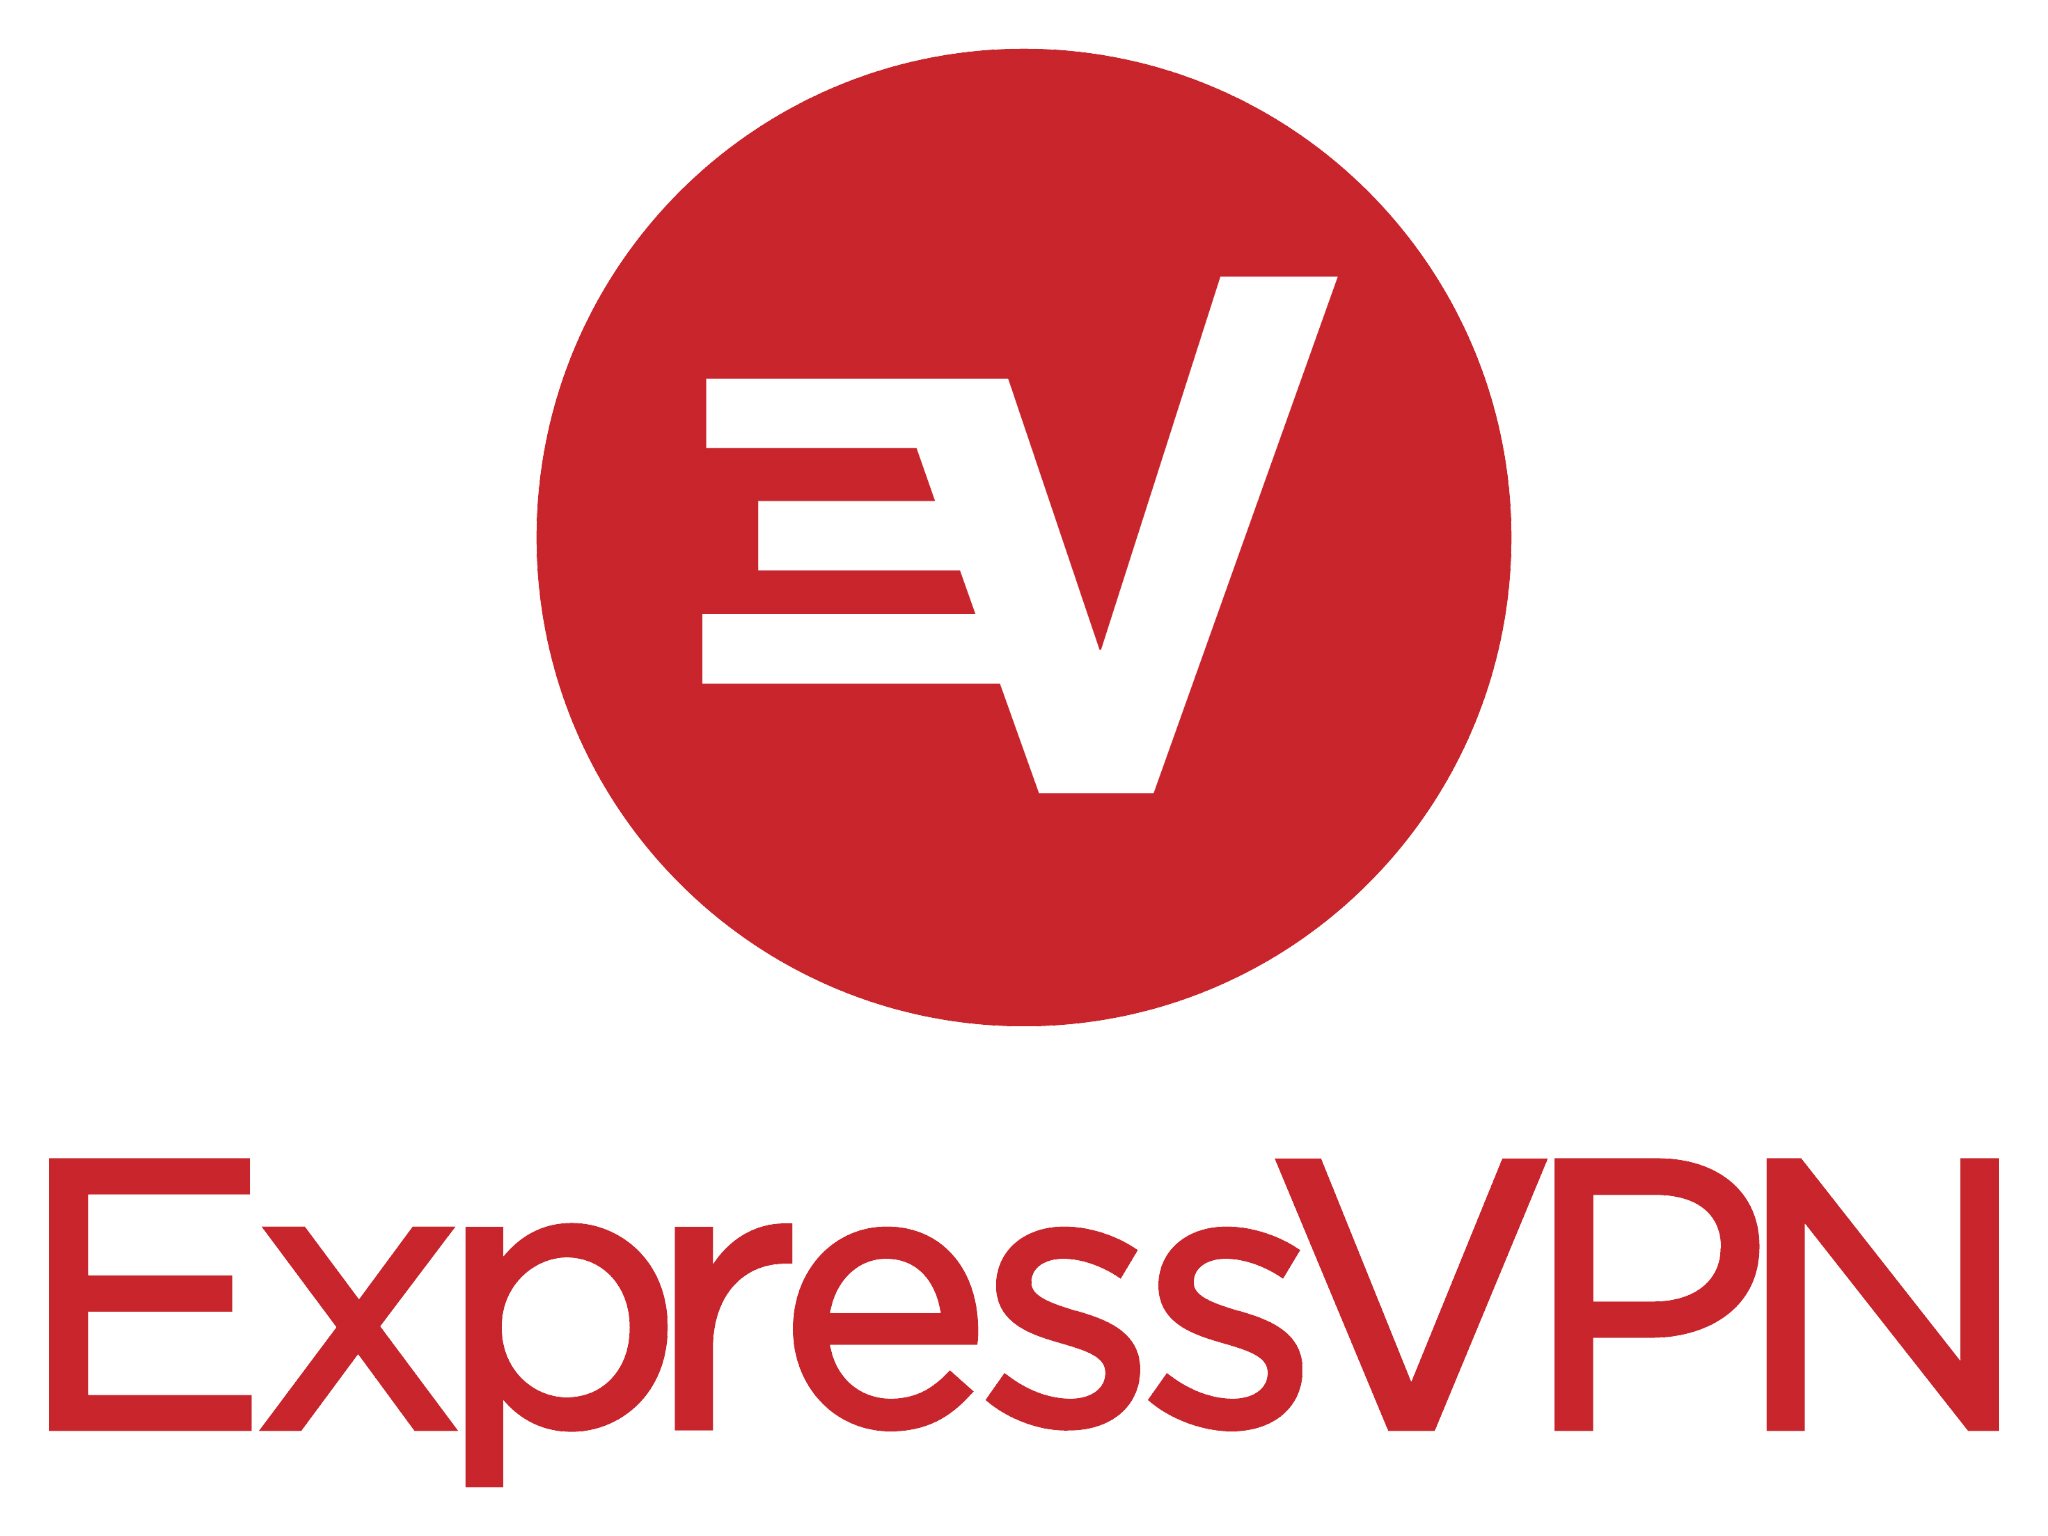 expressvpn-logo.jpg?itok=kSpZVB3R